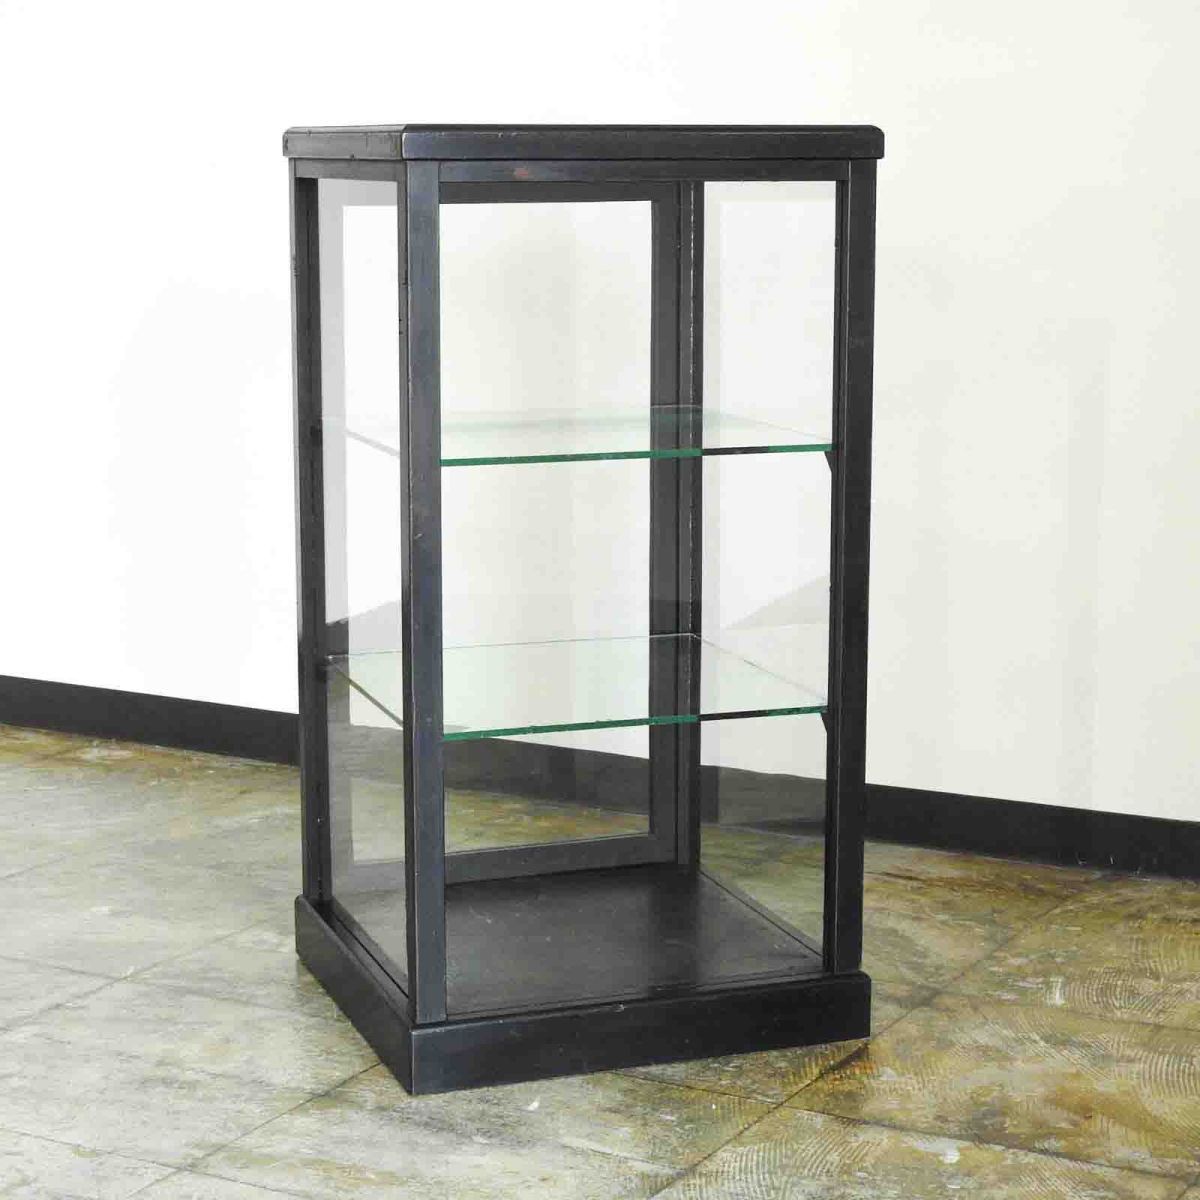 無垢材 黒色木枠に5面ガラス ふるい卓上・縦型ショーケース ケビント 戸棚 スパイスラック ガラスケース HK-a-00196 